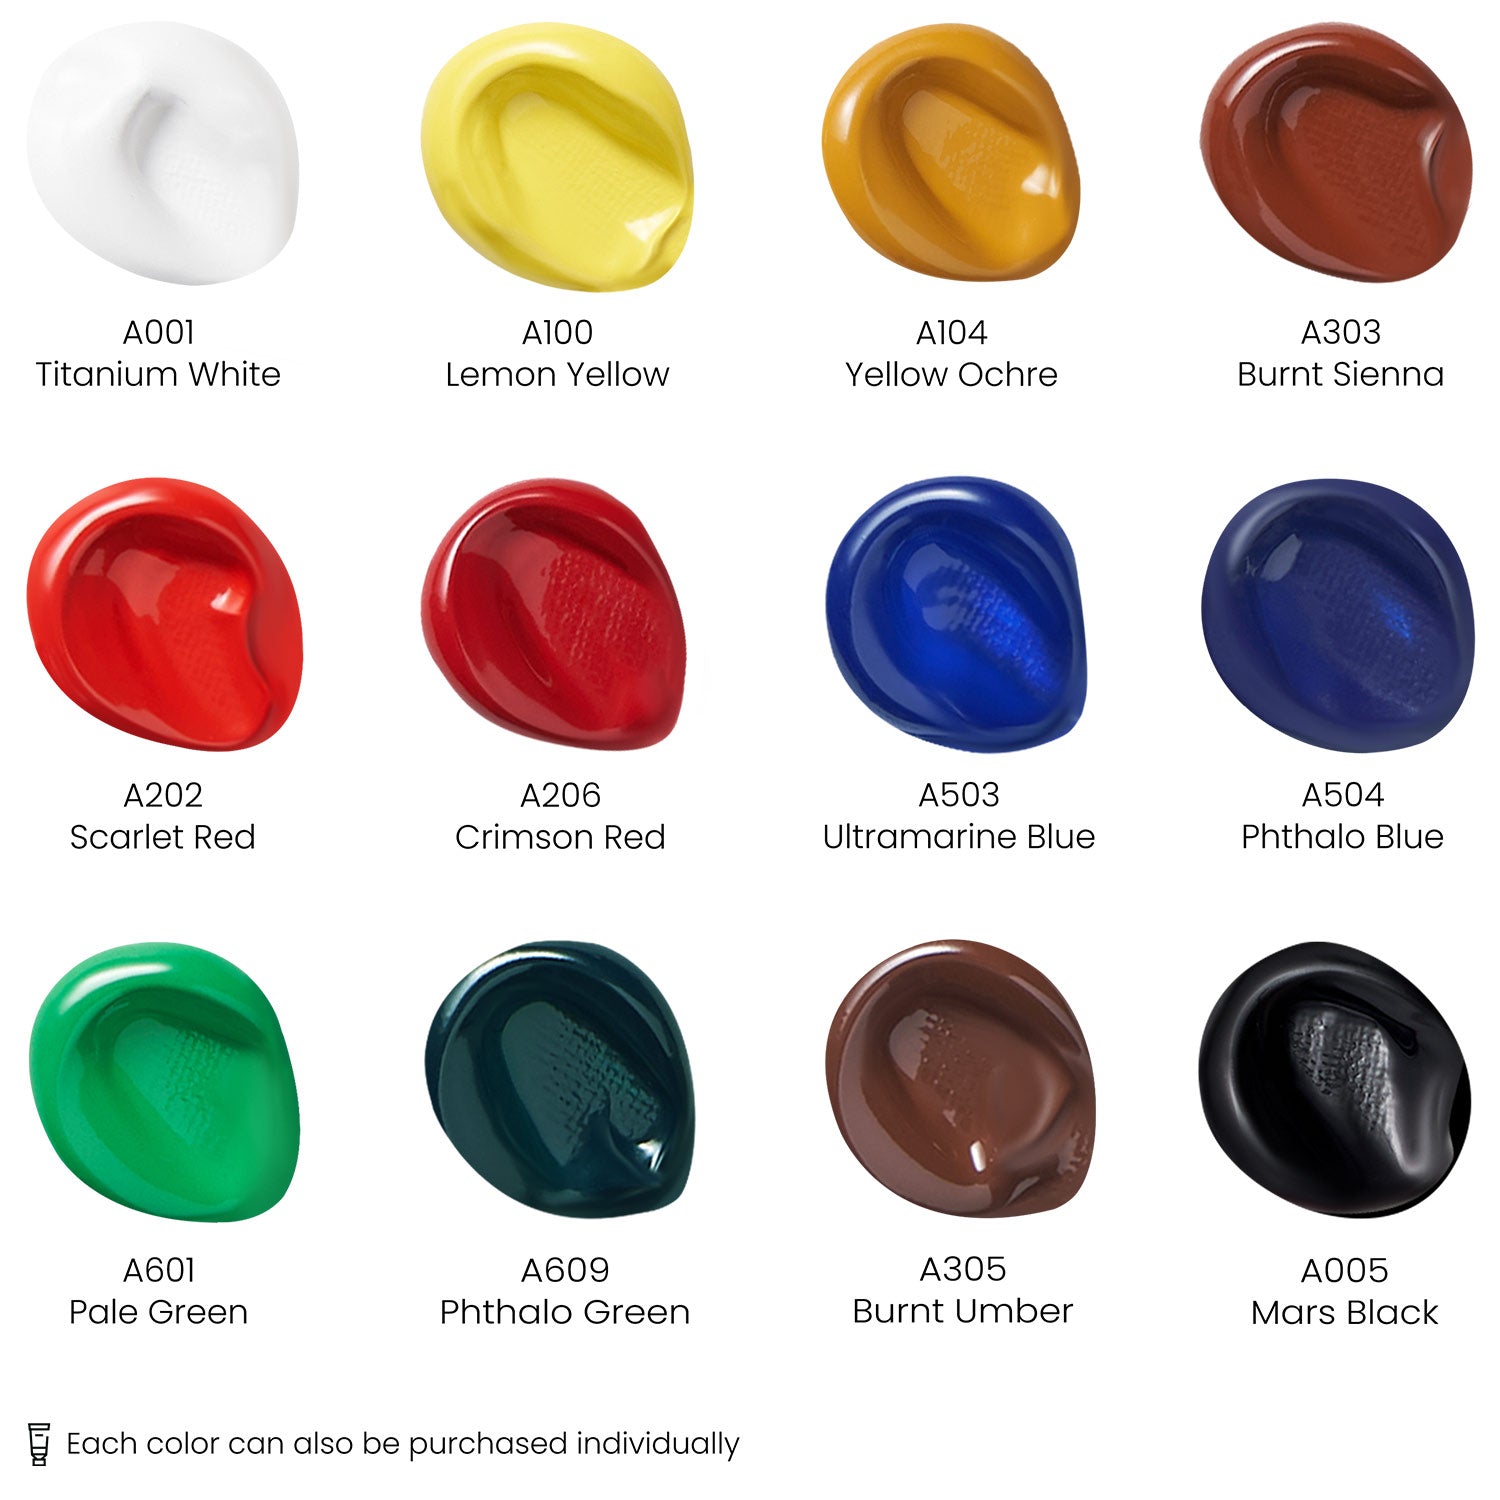 Arteza Gouache Premium Artist Paints Set 24 Colors X 12 Ml 0.74 US FL Oz  Acrylic for sale online